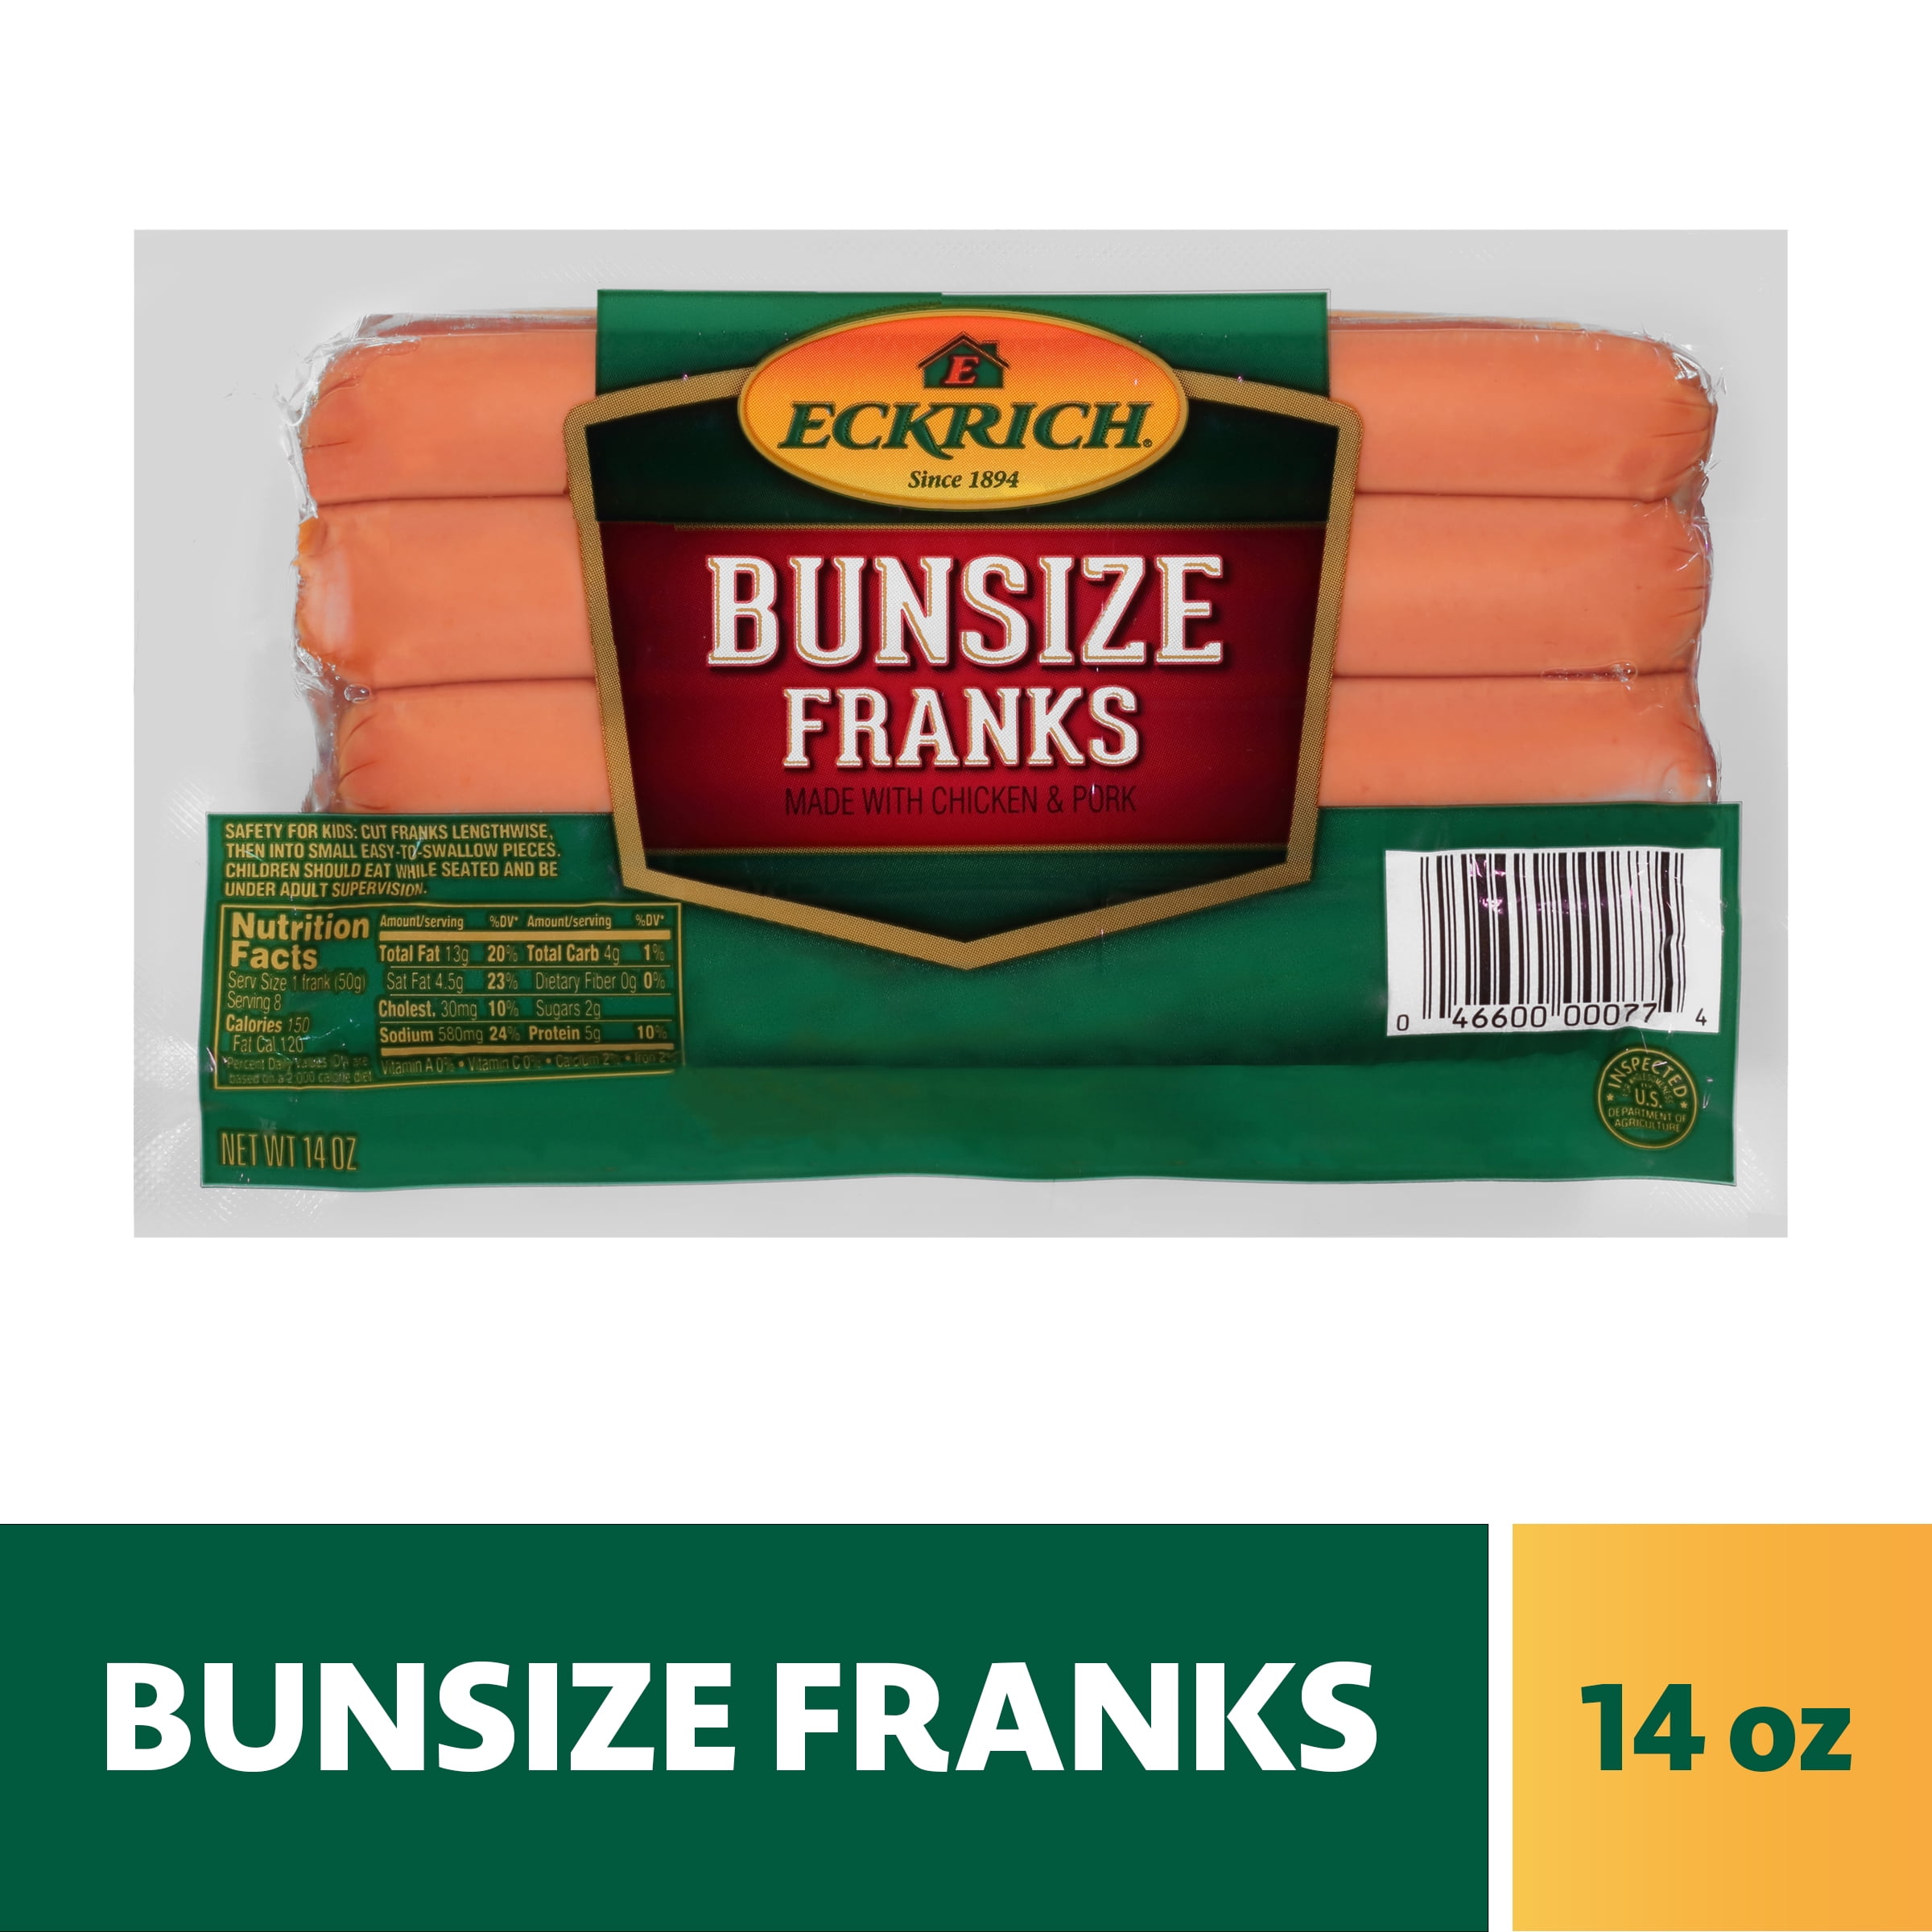 Find Your Perfect Eckrich Bunsize Franks, 14 oz - Walmart.com